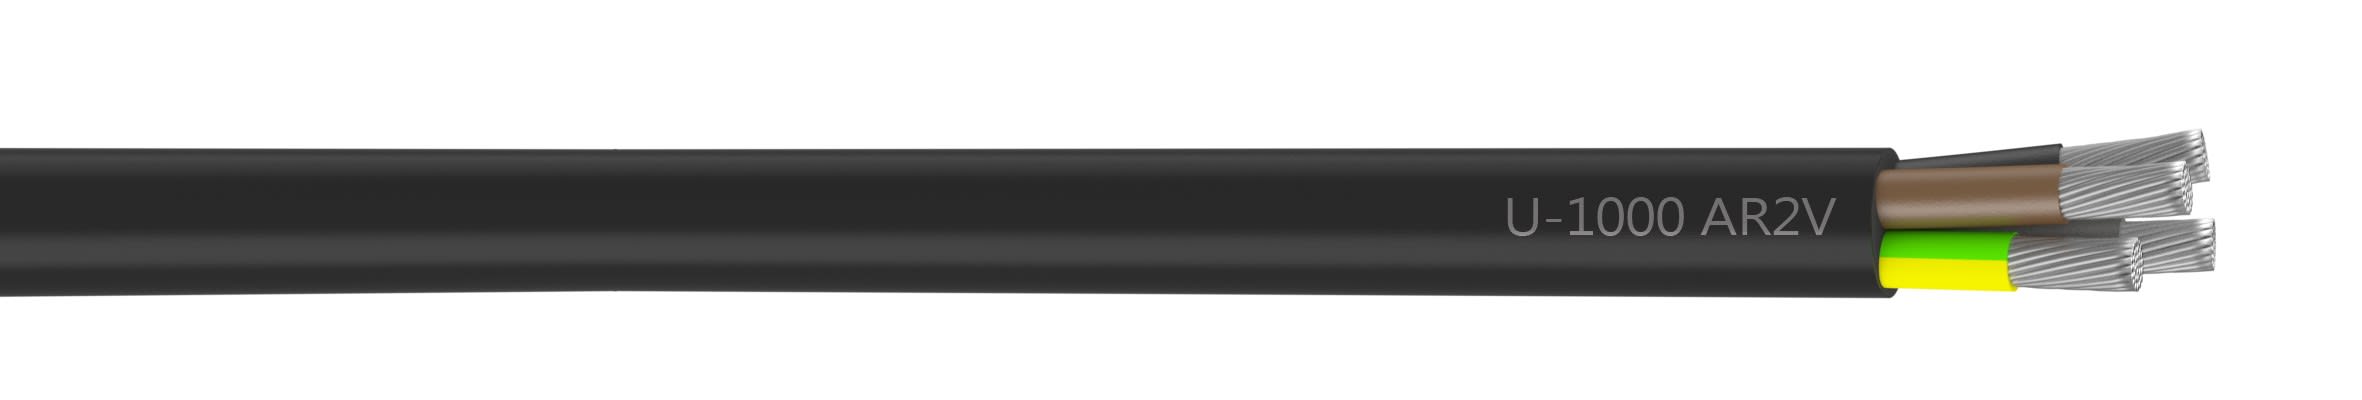 Nexans - Câble rigide U-1000 AR2V aluminium 4G120 longueur à la coupe